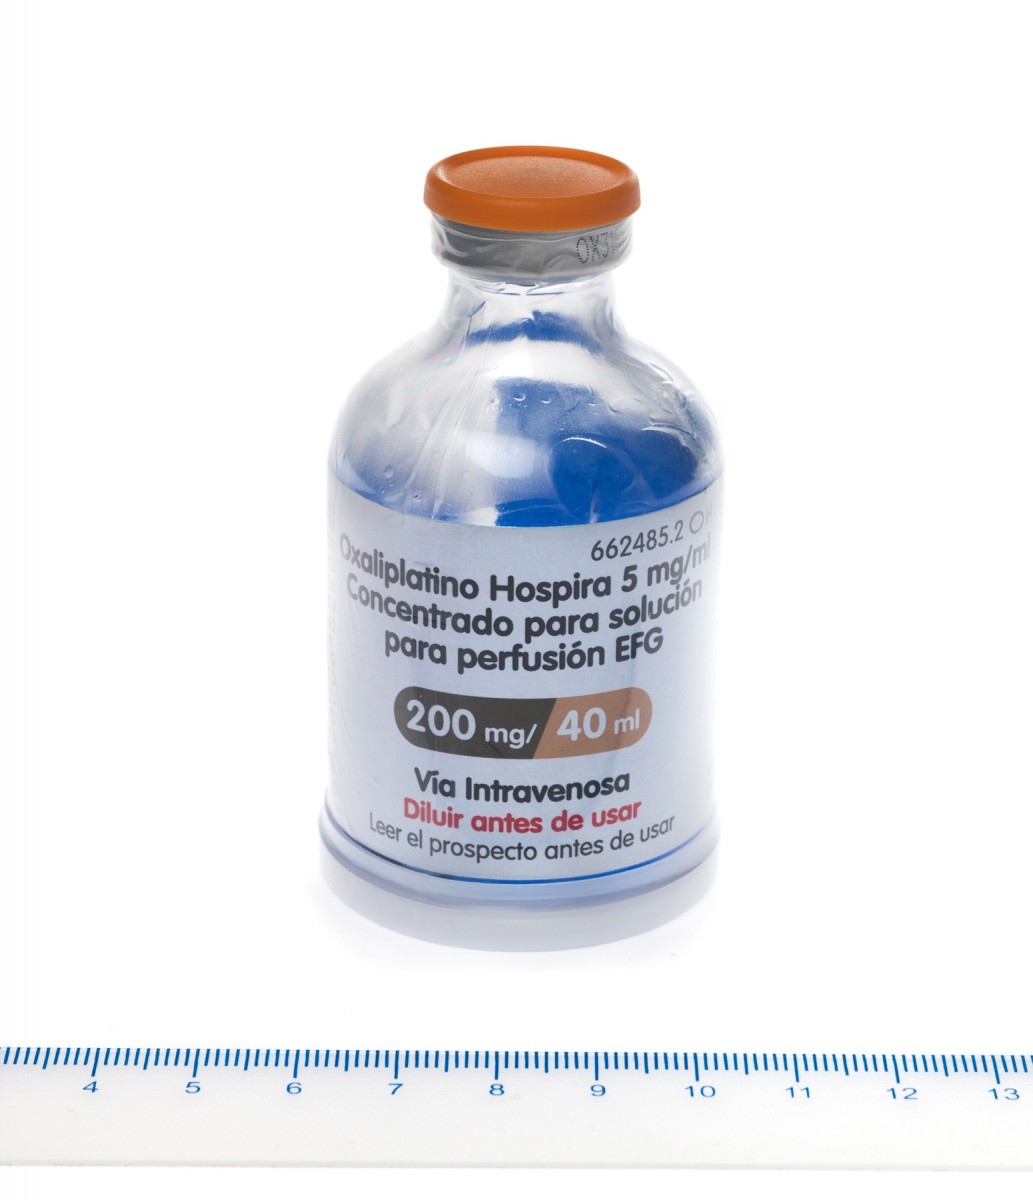 OXALIPLATINO HOSPIRA 5 mg/ml CONCENTRADO PARA SOLUCION PARA PERFUSION EFG , 1 vial de 40 ml fotografía de la forma farmacéutica.